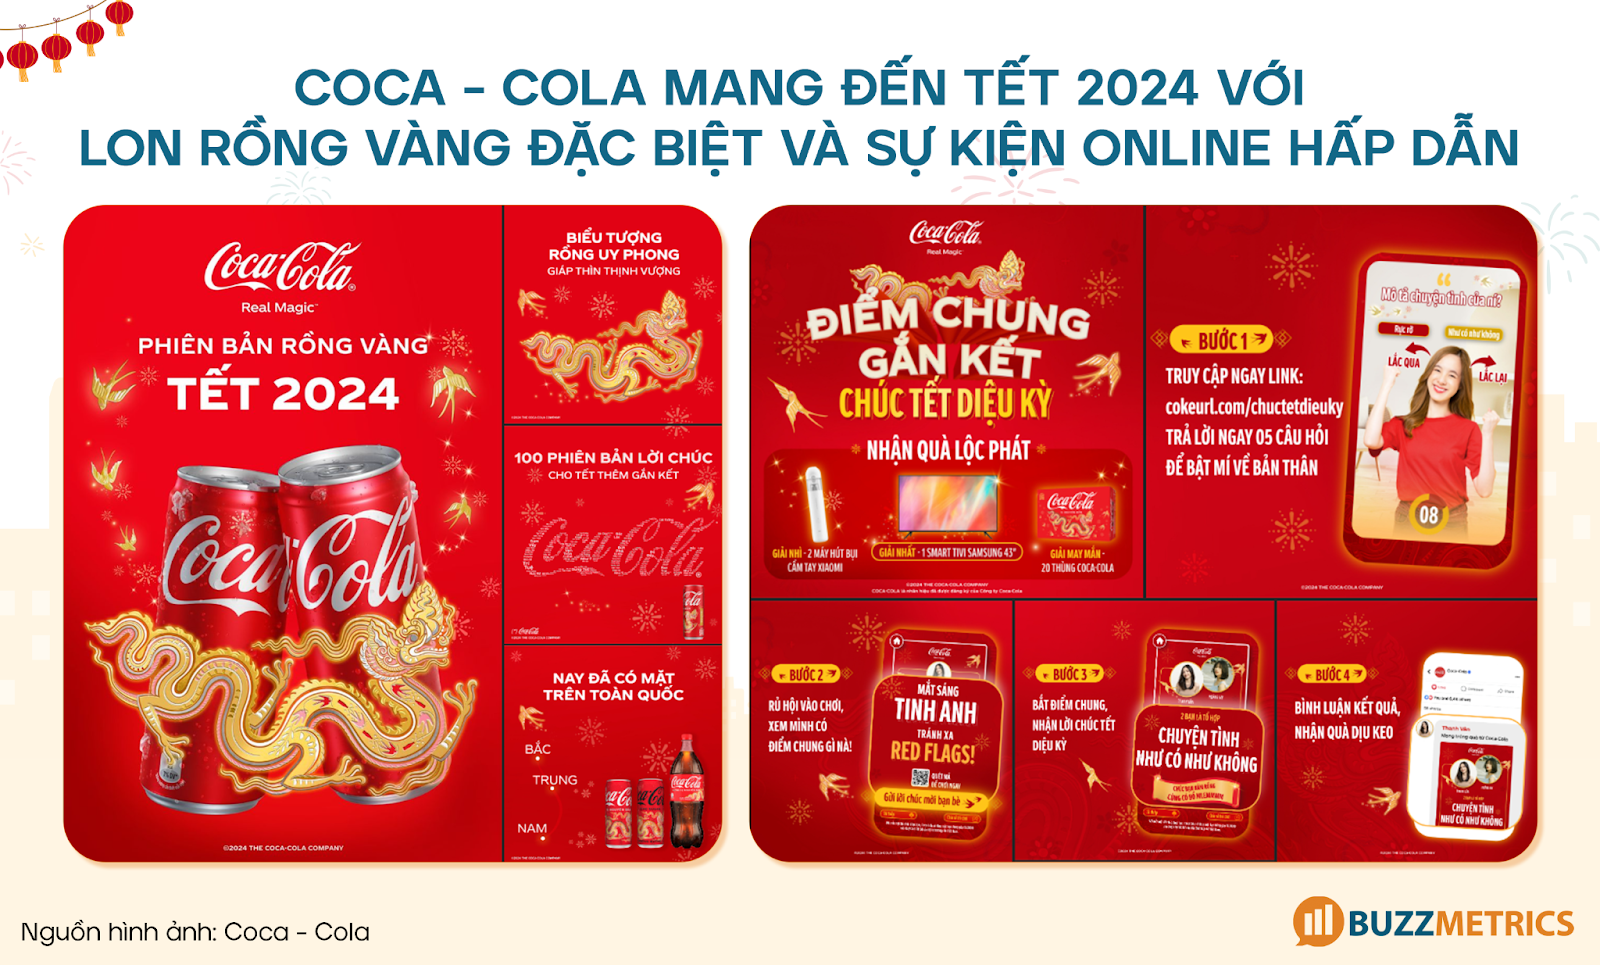 Hình 5: Coca-cola mang đến Tết 2024 với lon rồng vàng đặc biệt và sự kiện online hấp dẫn